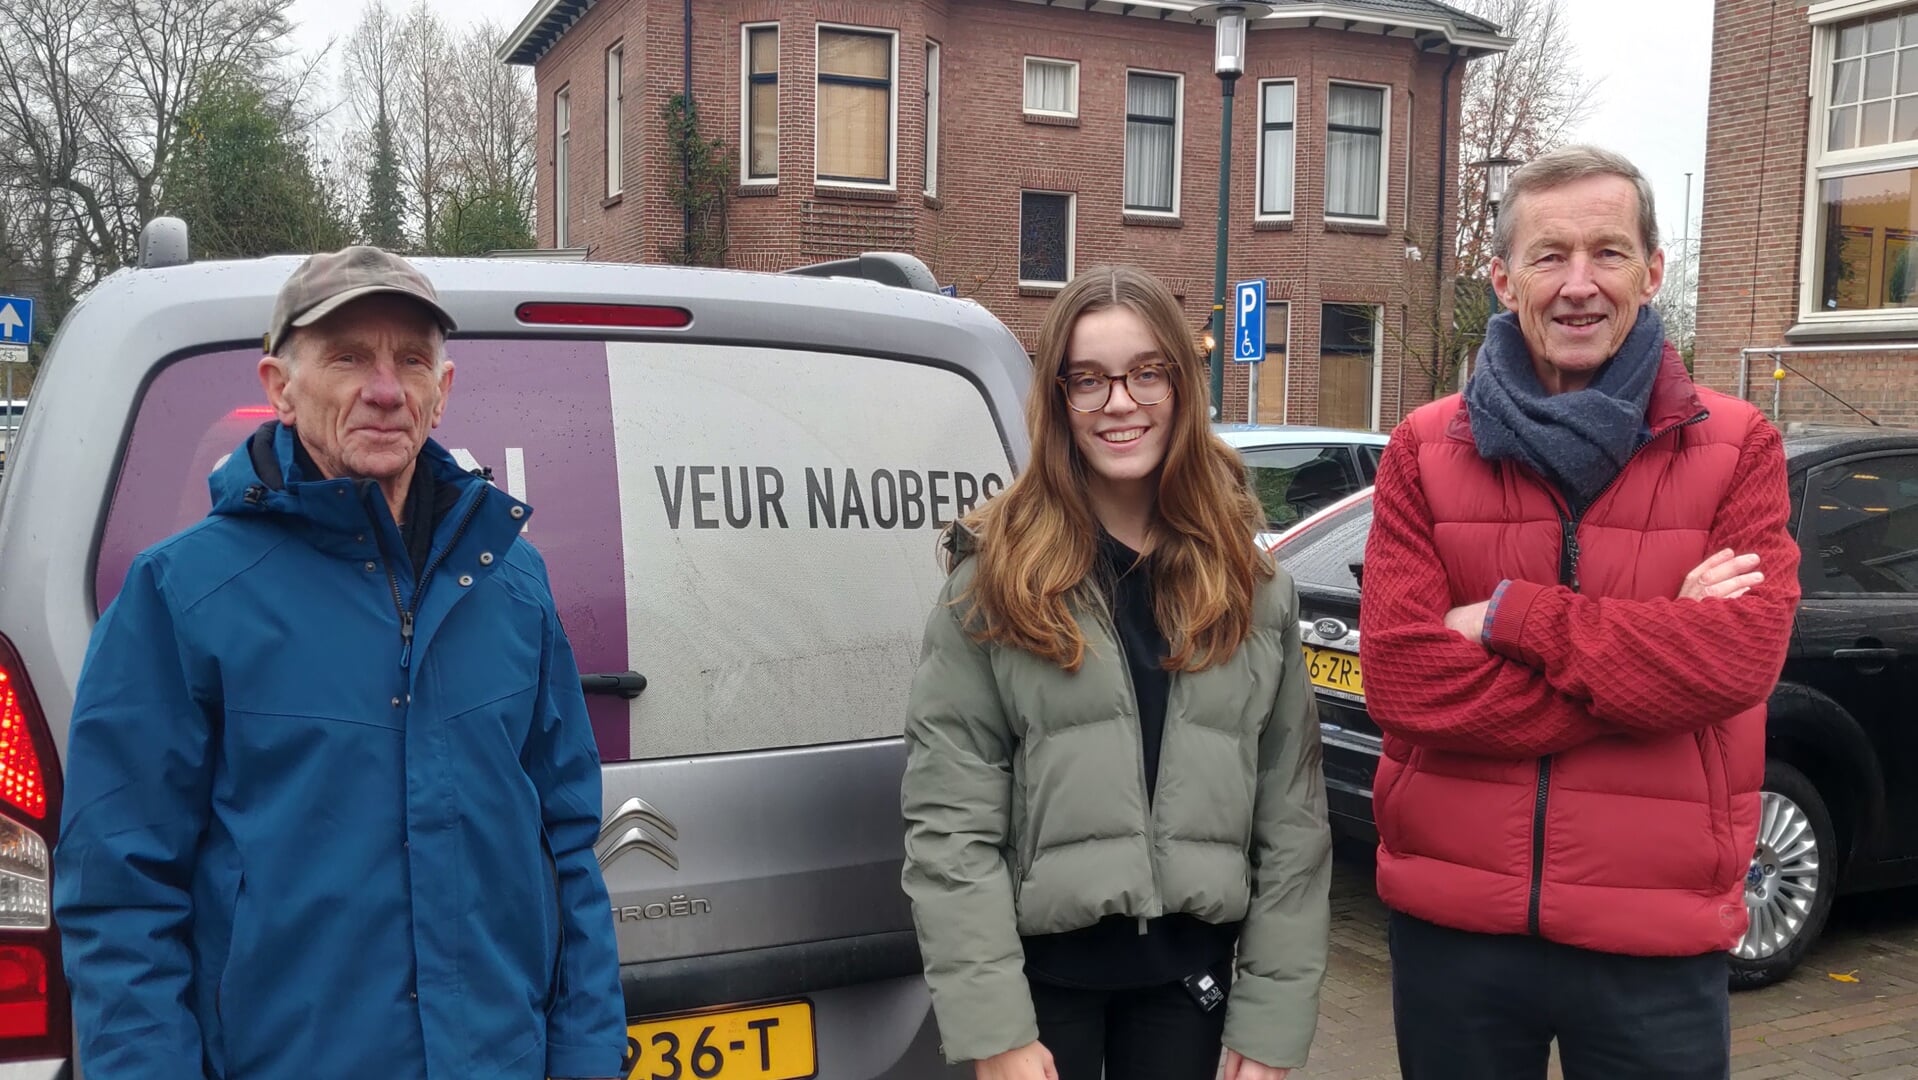 Theo Venderbosch, Daisy Tetteroo en Pieter Heijboer (v.l.n.r.). Foto: Rob Stevens